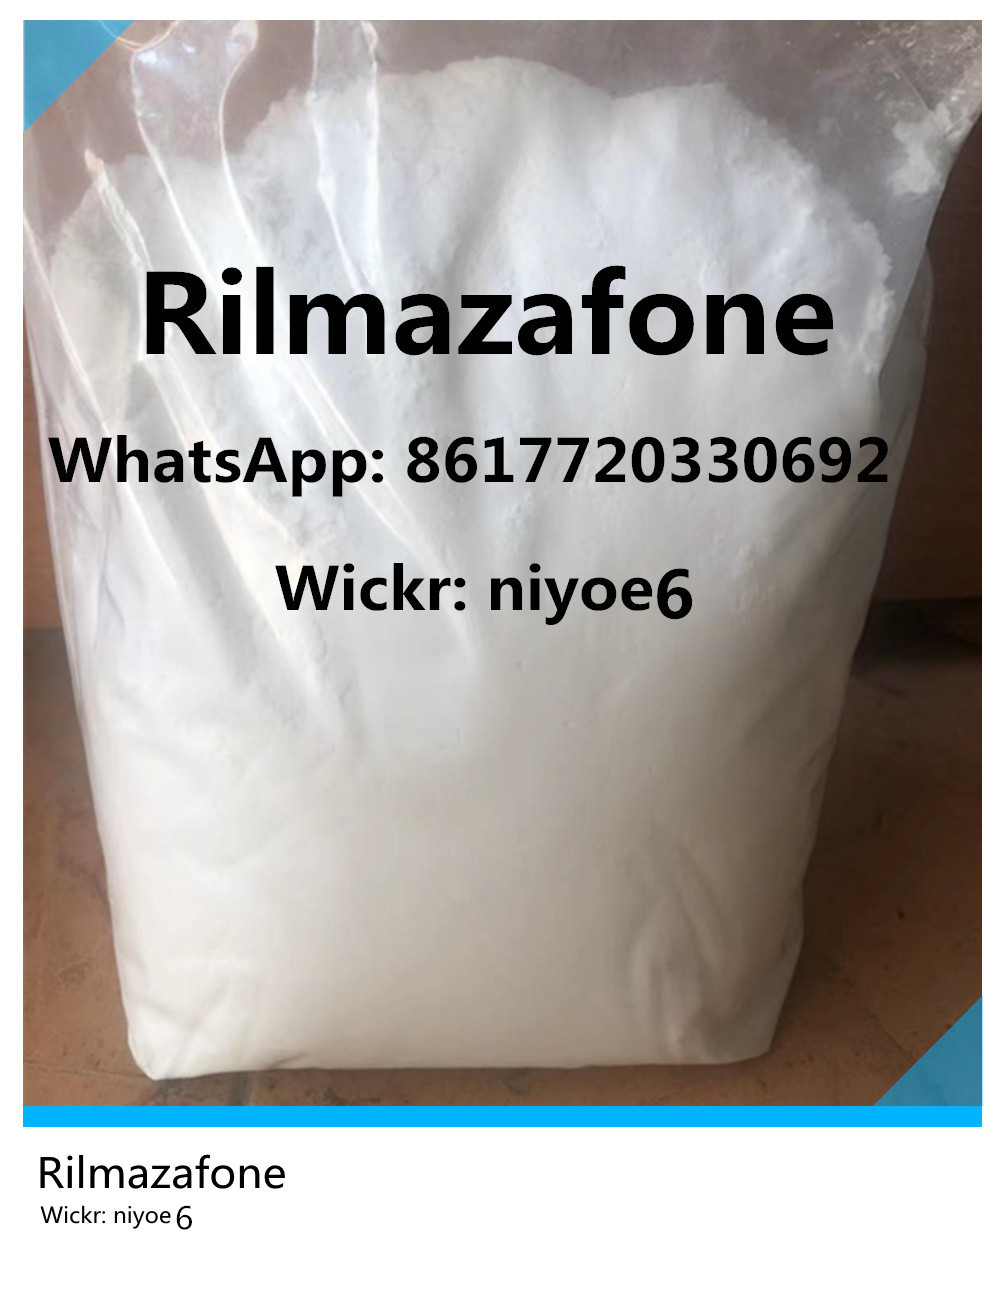 99% Rilmazafone Chemicals CAS 99593-25-6 API Benzos Powder with Factory Price Wickr: niyoe6